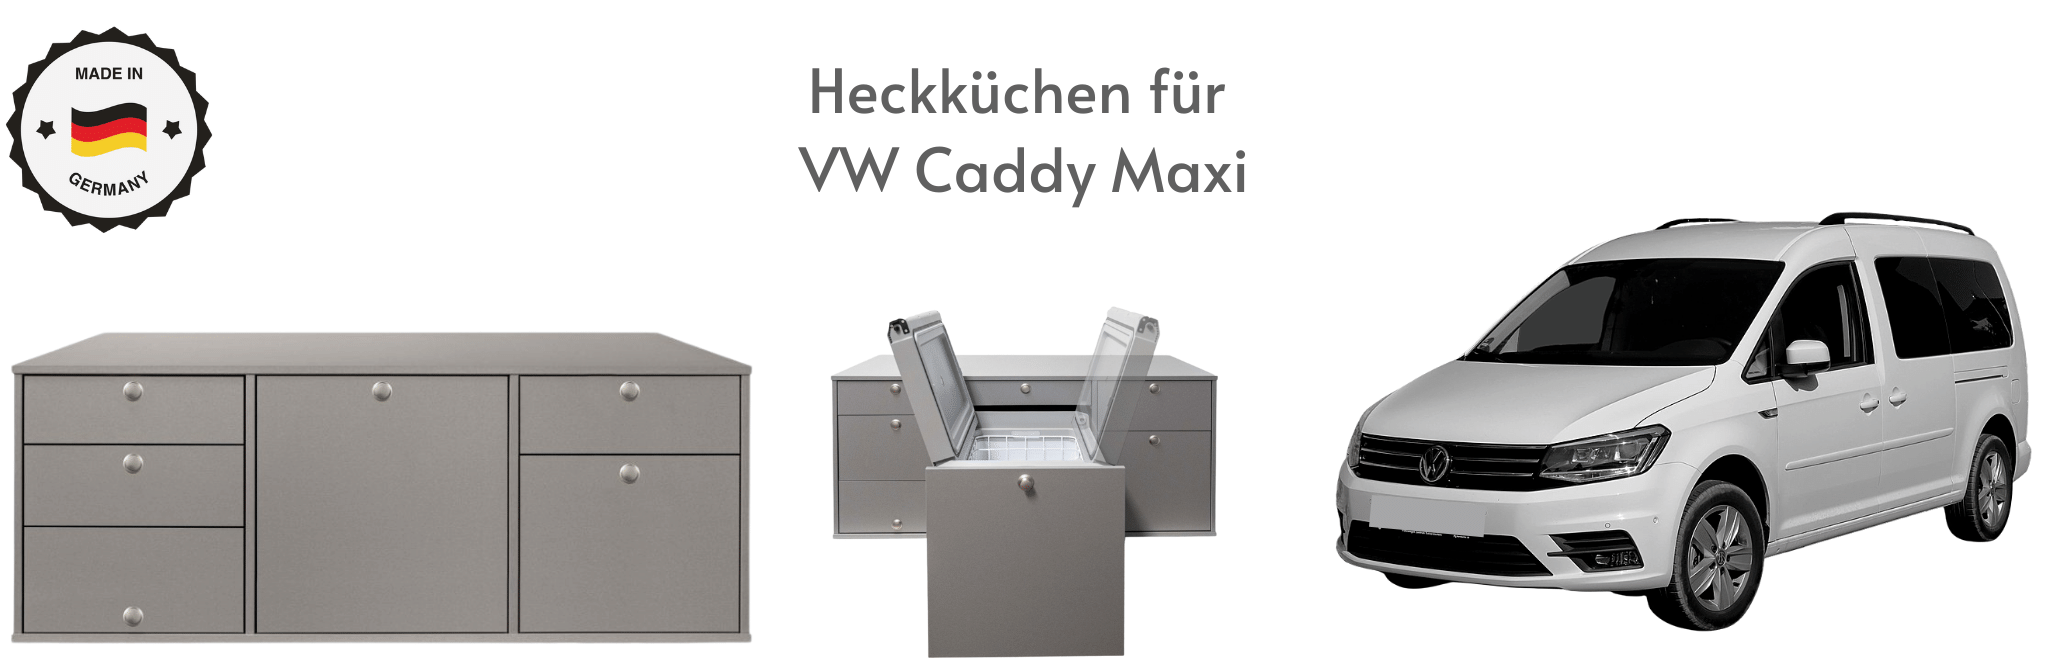 Heckküchen für VW Caddy Maxi